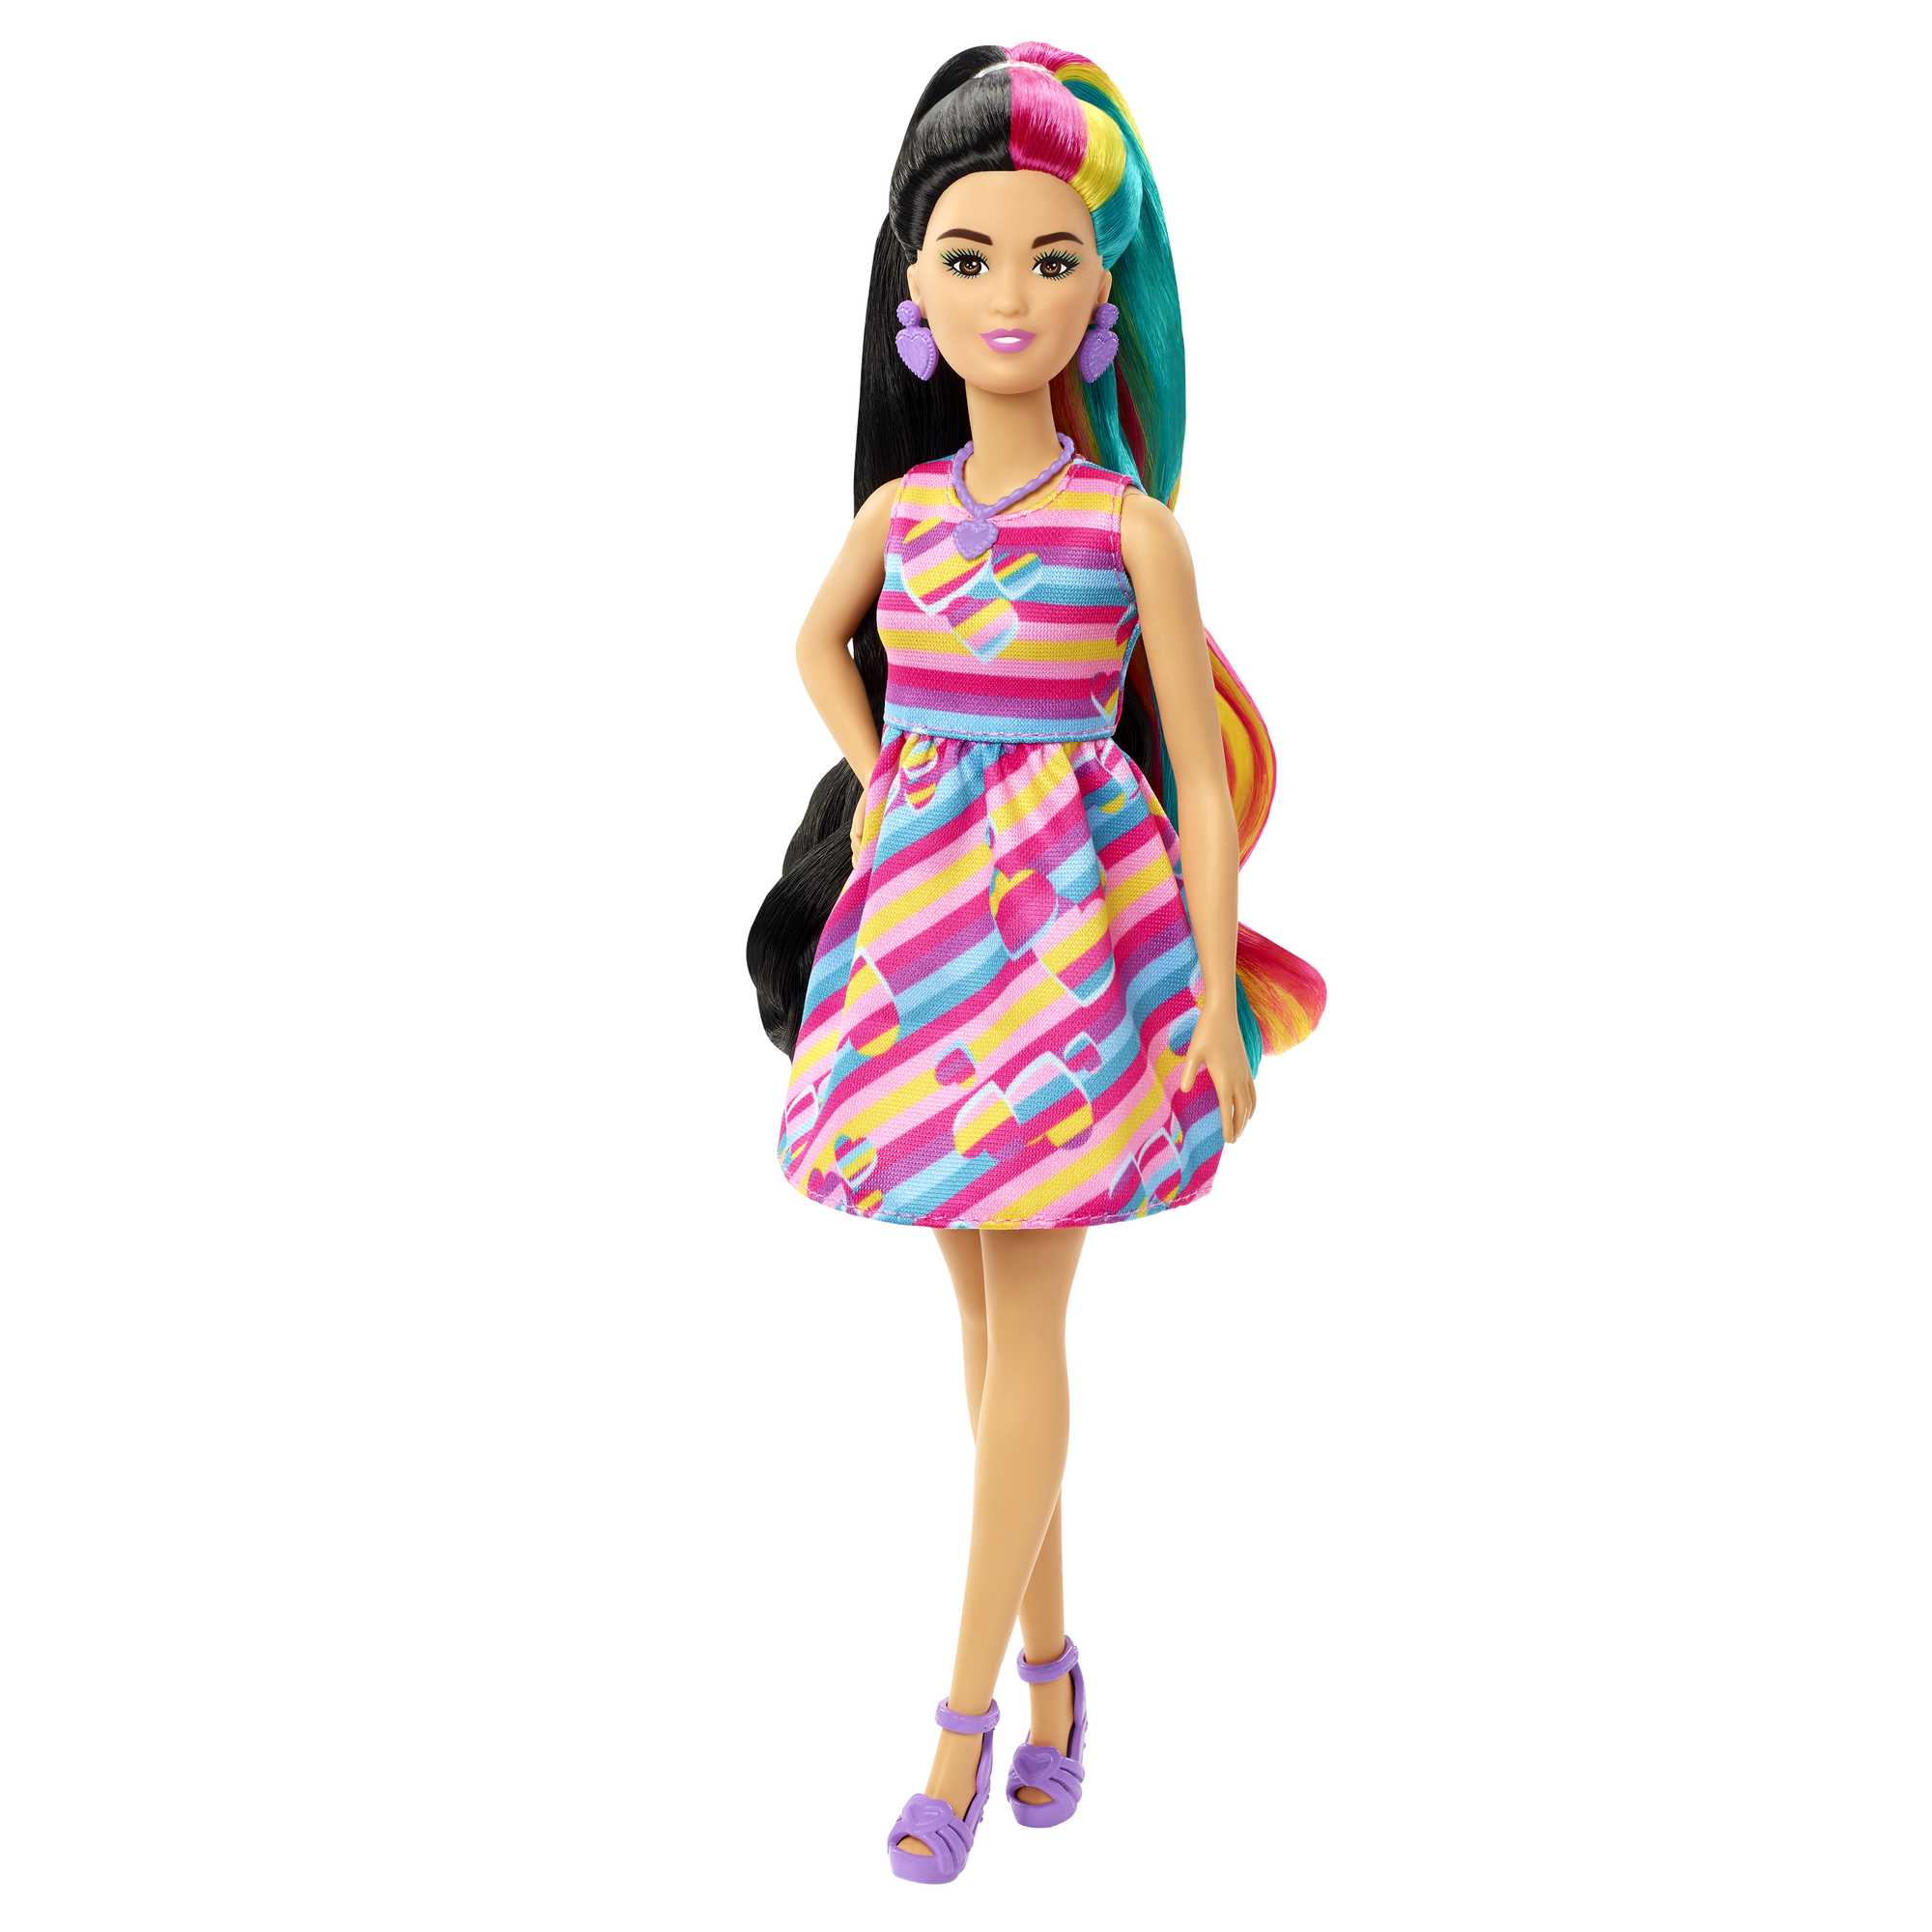 Kit compleanno Barbie 24 persone Dreamtopia